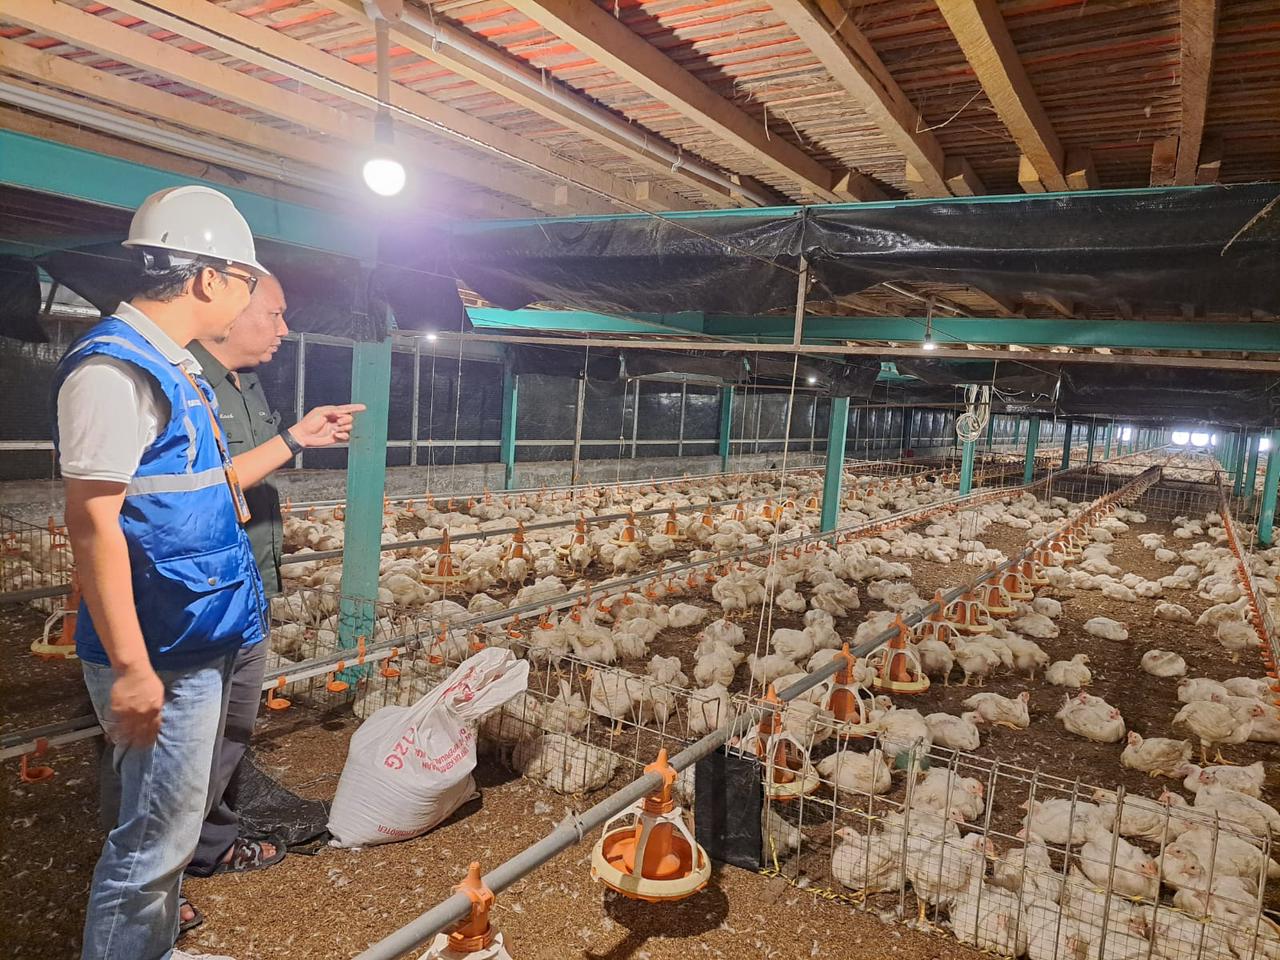 Usaha pembibitan ayam di Muara Enim, Sumatera Selatan jadi salah satu pelanggan program Electrifying Agriculture yang digagas PLN. Dengan meningkatkan penggunaan peralatan listrik, usaha tersebut bisa meningkatkan kapasitas produksi hingga 12 persen. Dari yang sebelumnya hanya 130-140 ribu butir telur per hari, menjadi di atas 150 ribu butir telur per hari. (Foto: PT PLN)